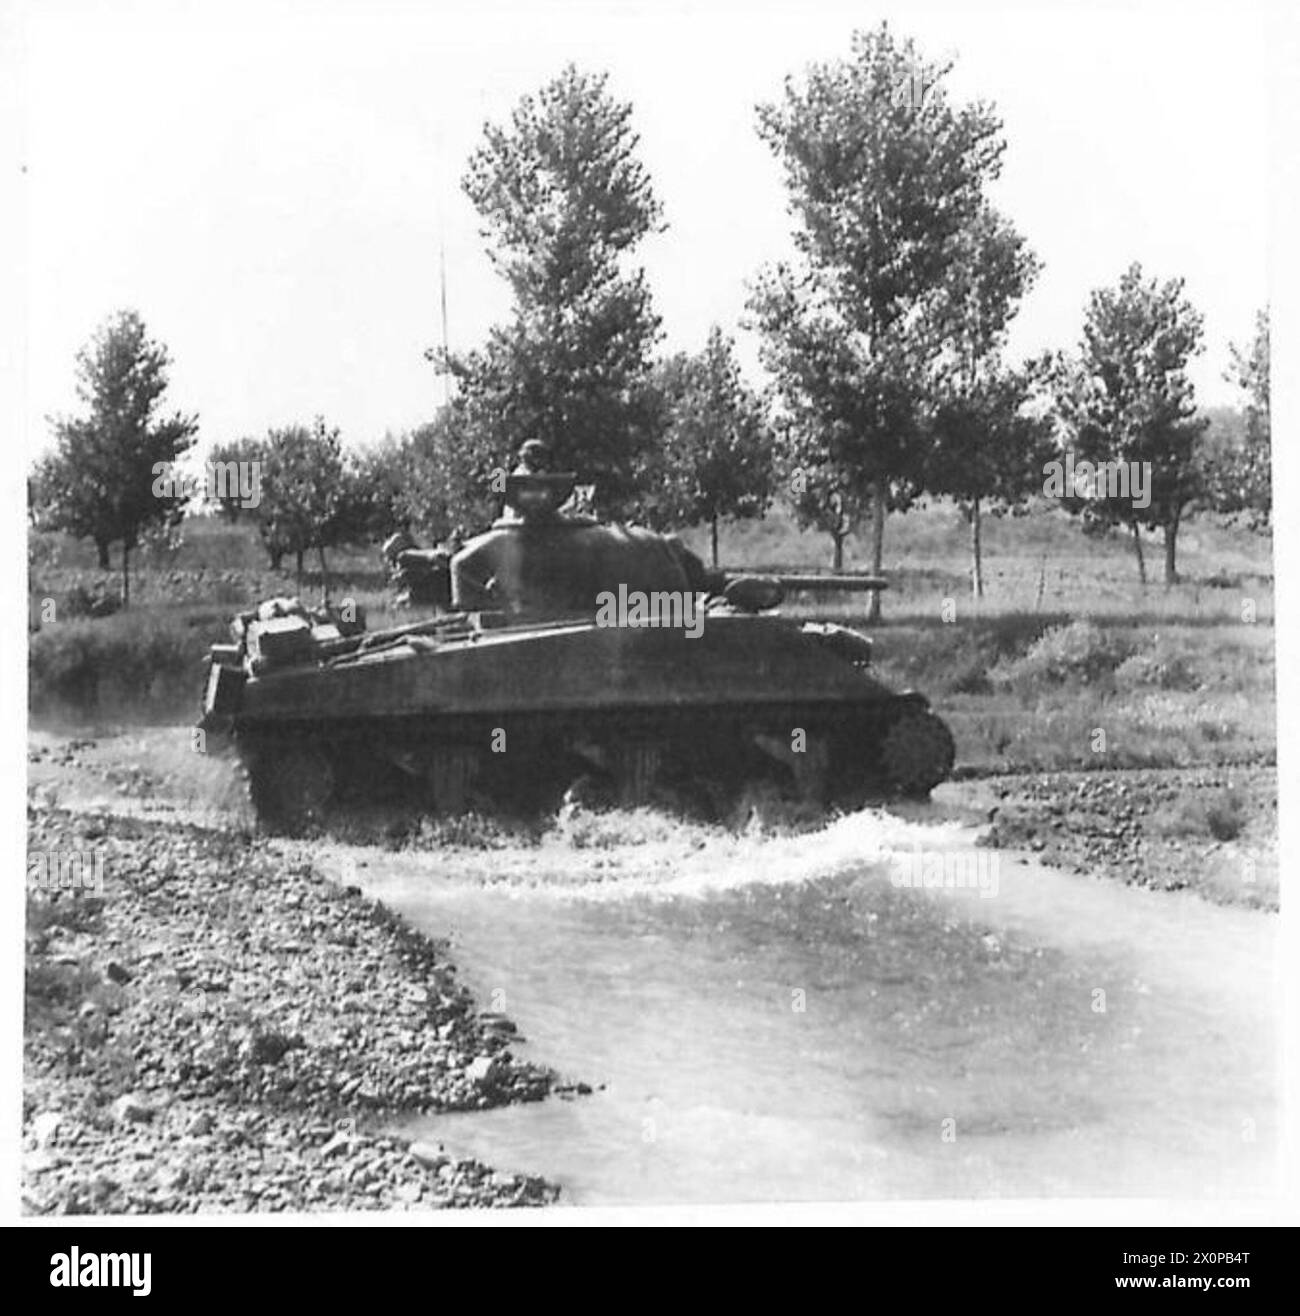 OTTAVA ARMATA: DEMOLIZIONI TEDESCHE - Un carro armato Sherman che attraversa il fiume Arno. Negativo fotografico, British Army Foto Stock